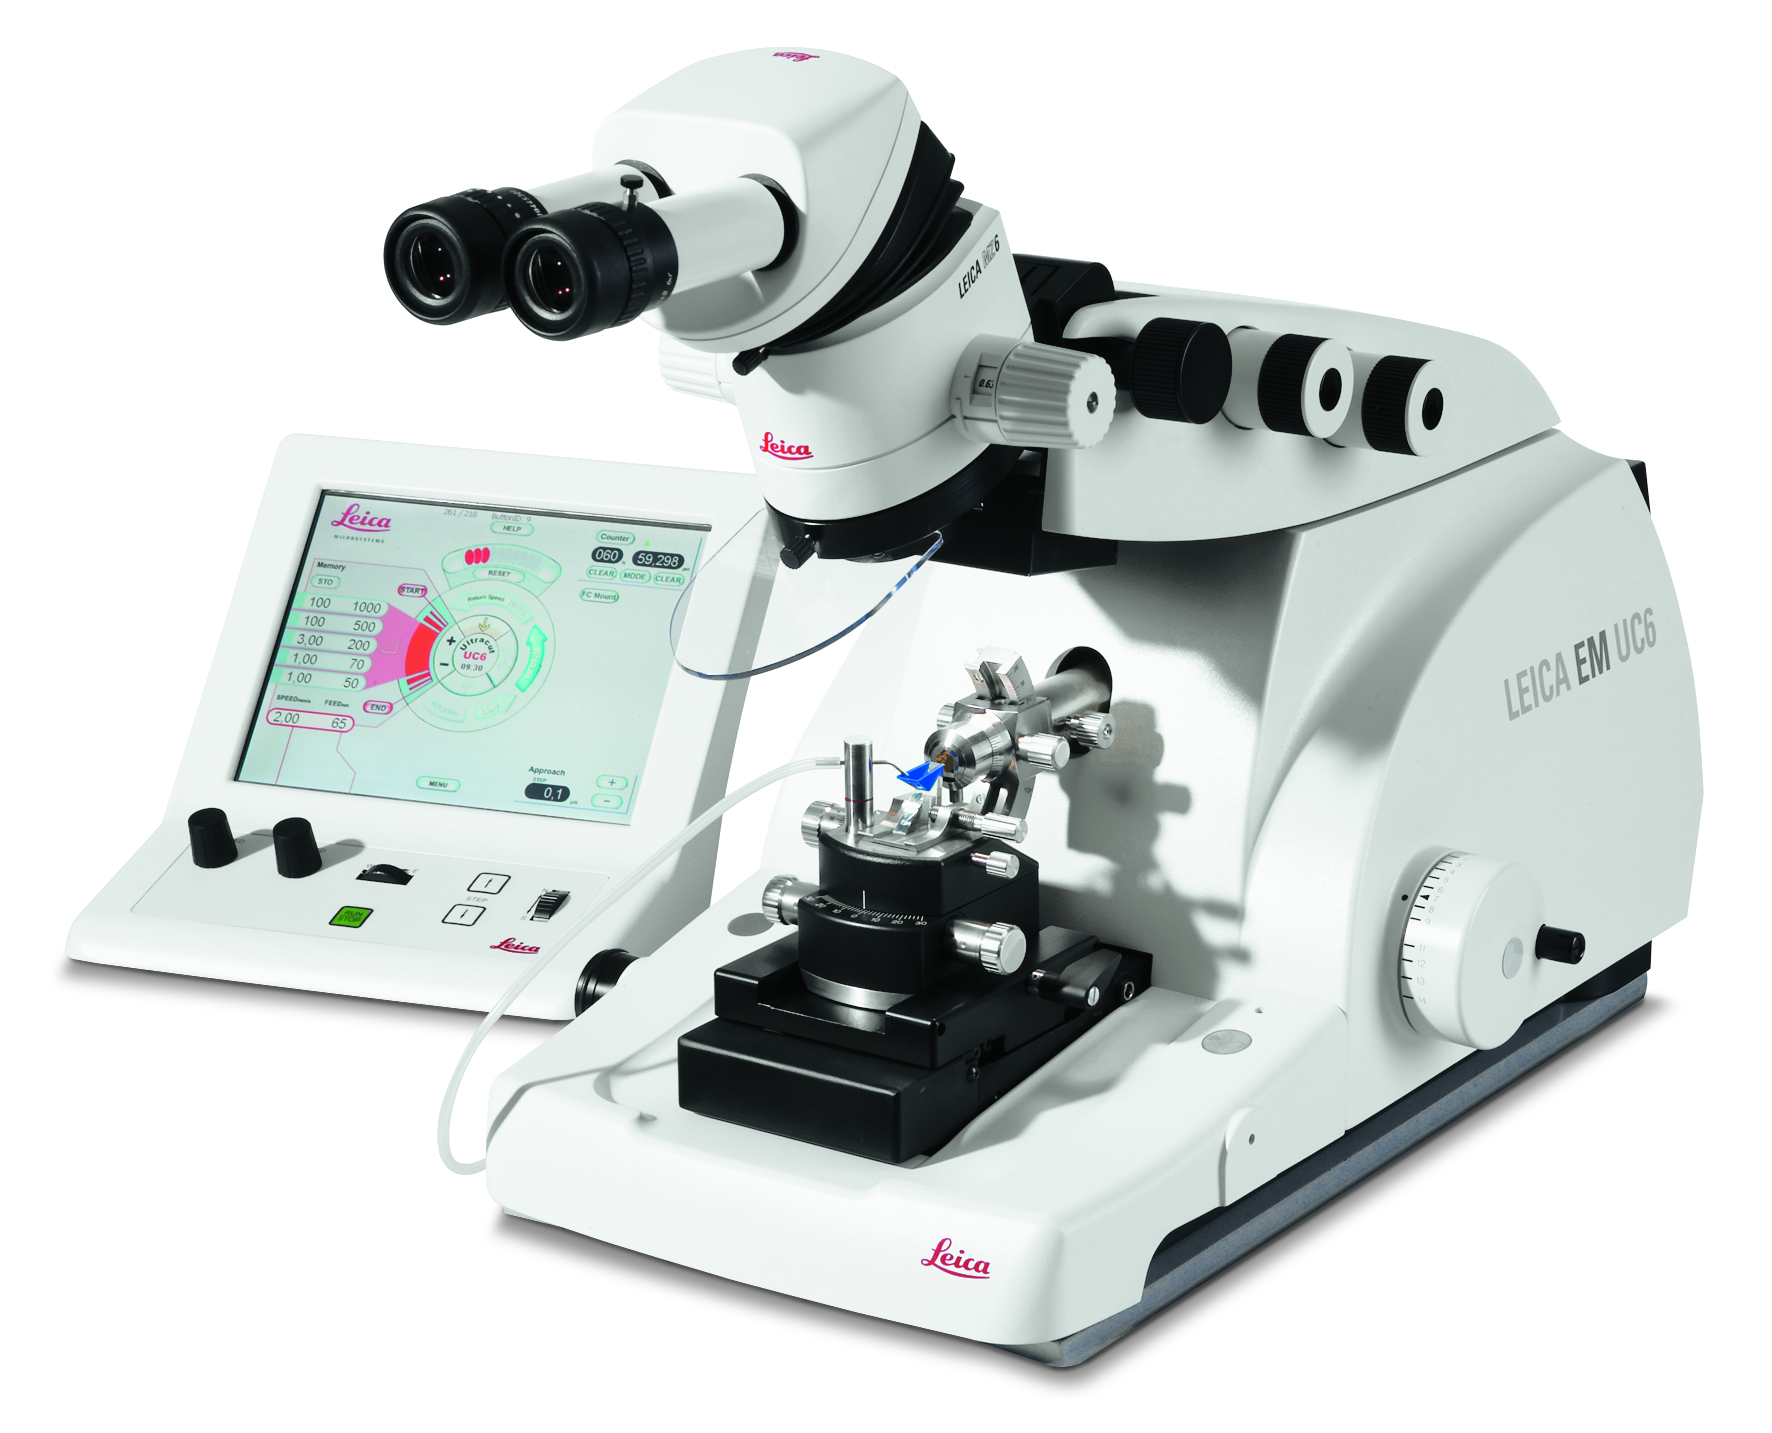 O ultramicrótomo para secionamento ultrafino de amostras de espécimes biológicos e industriais Leica EM UC6